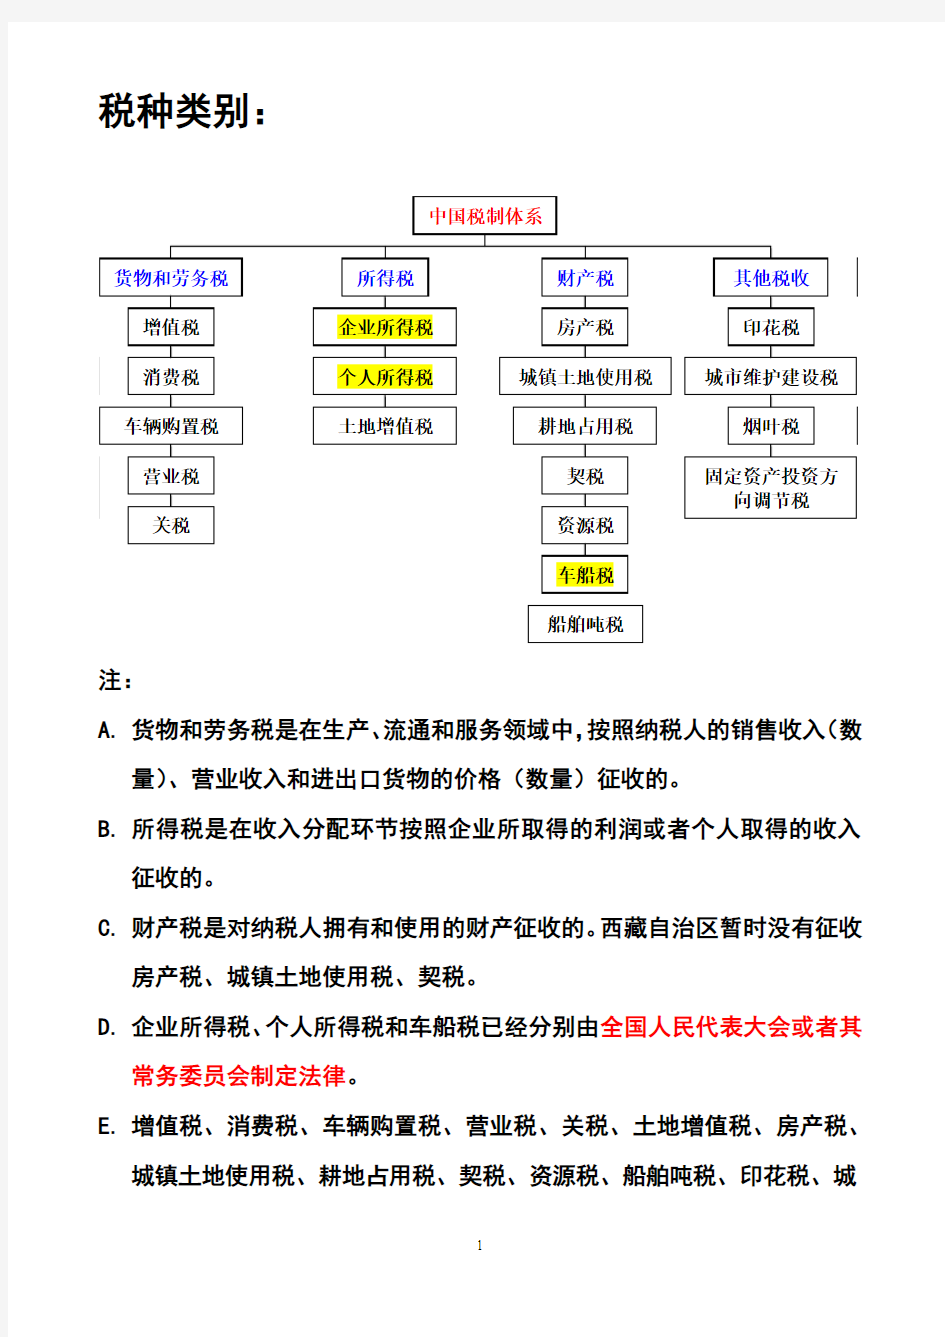 1-1中国税制体系图(分税种类别)